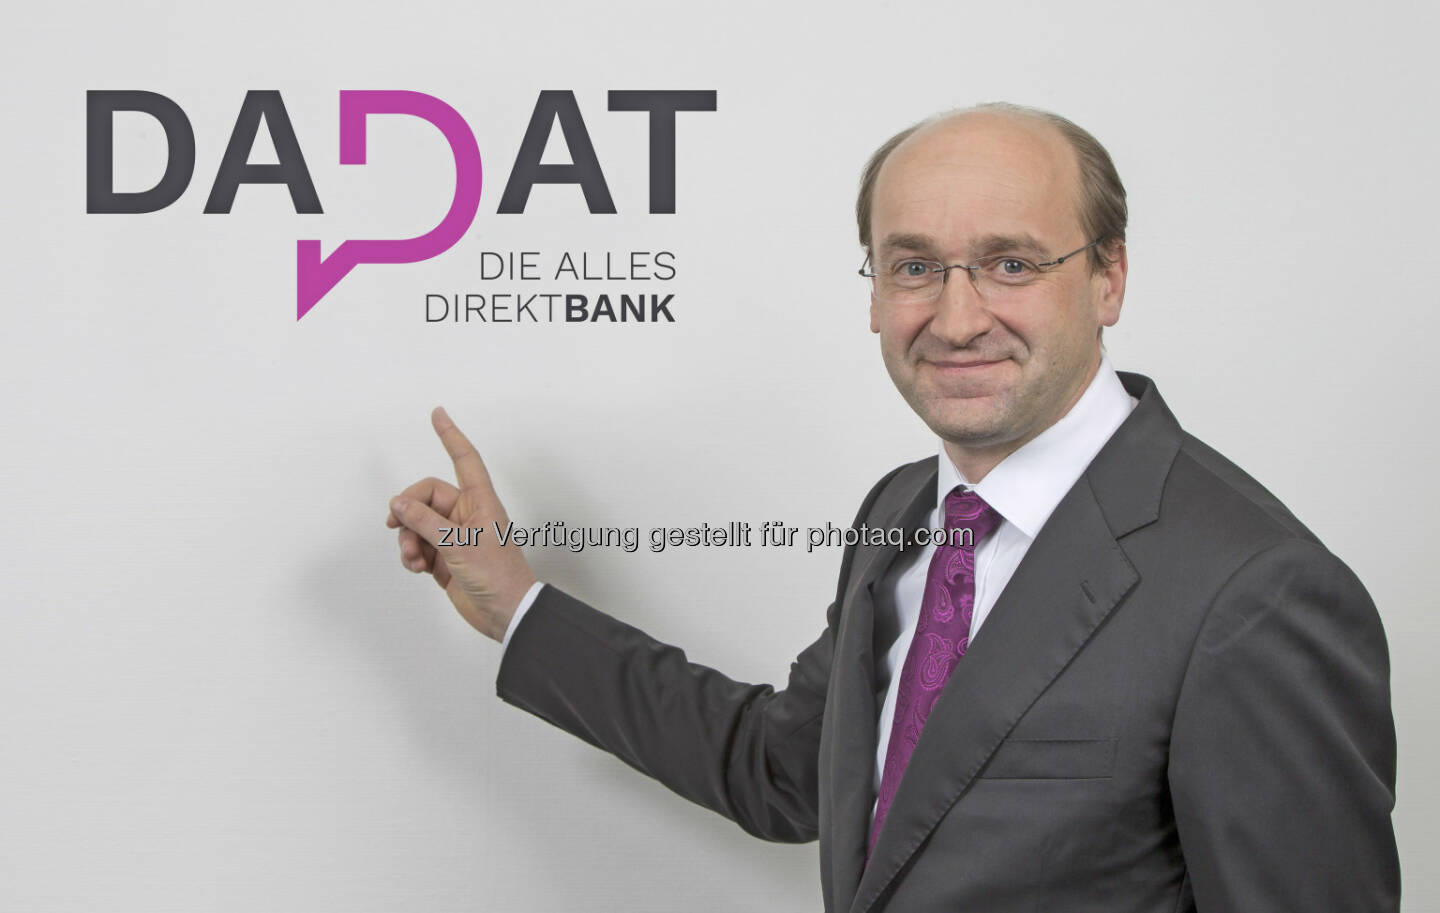 Mit der Webseite www.dad.at, die optimal auch für die mobile Nutzung per Smartphone und Tablet konzipiert ist, möchte Huber neue Maßstäbe in der österreichischen Direktbankenlandschaft setzen. (Bildquelle: DADAT Bank, Andreas Kolarik)